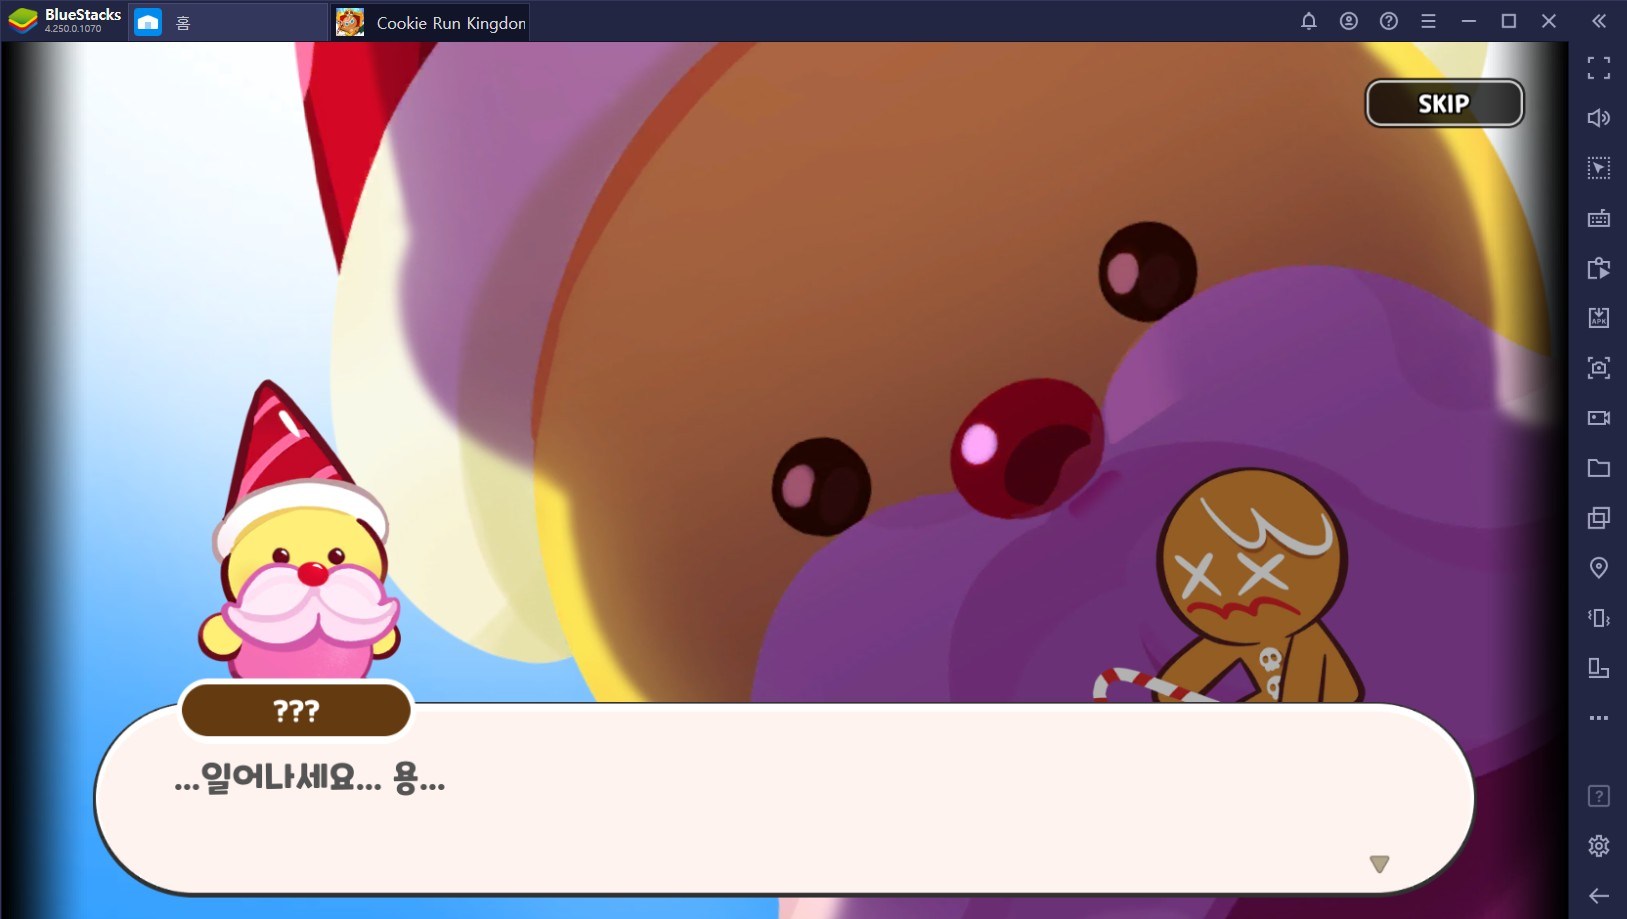 쿠키런: 킹덤 드디어 오픈, 귀여운 쿠키들의 모험을 PC에서 함께해보세요!